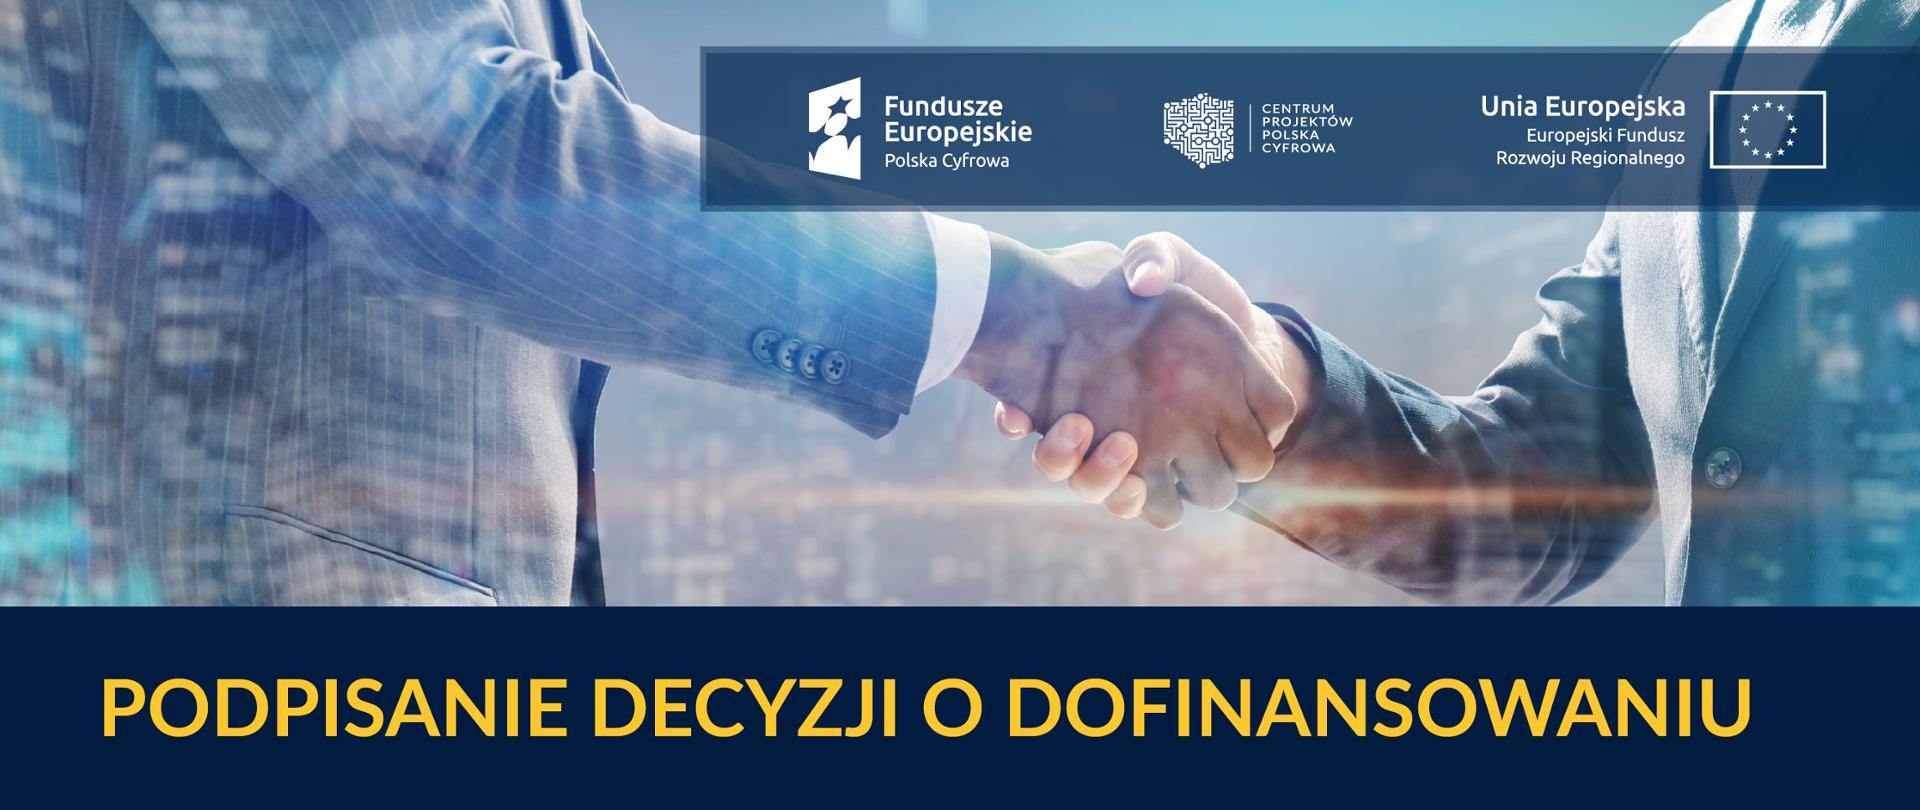 Baner: Podpisanie decyzji o dofinansowaniu. Logociąg: Fundusze Europejskie Polska Cyfrowa, Centrum Projektów Polska Cyfrowa oraz Unia Europejska Europejski Fundusz Rozwoju Regionalnego.